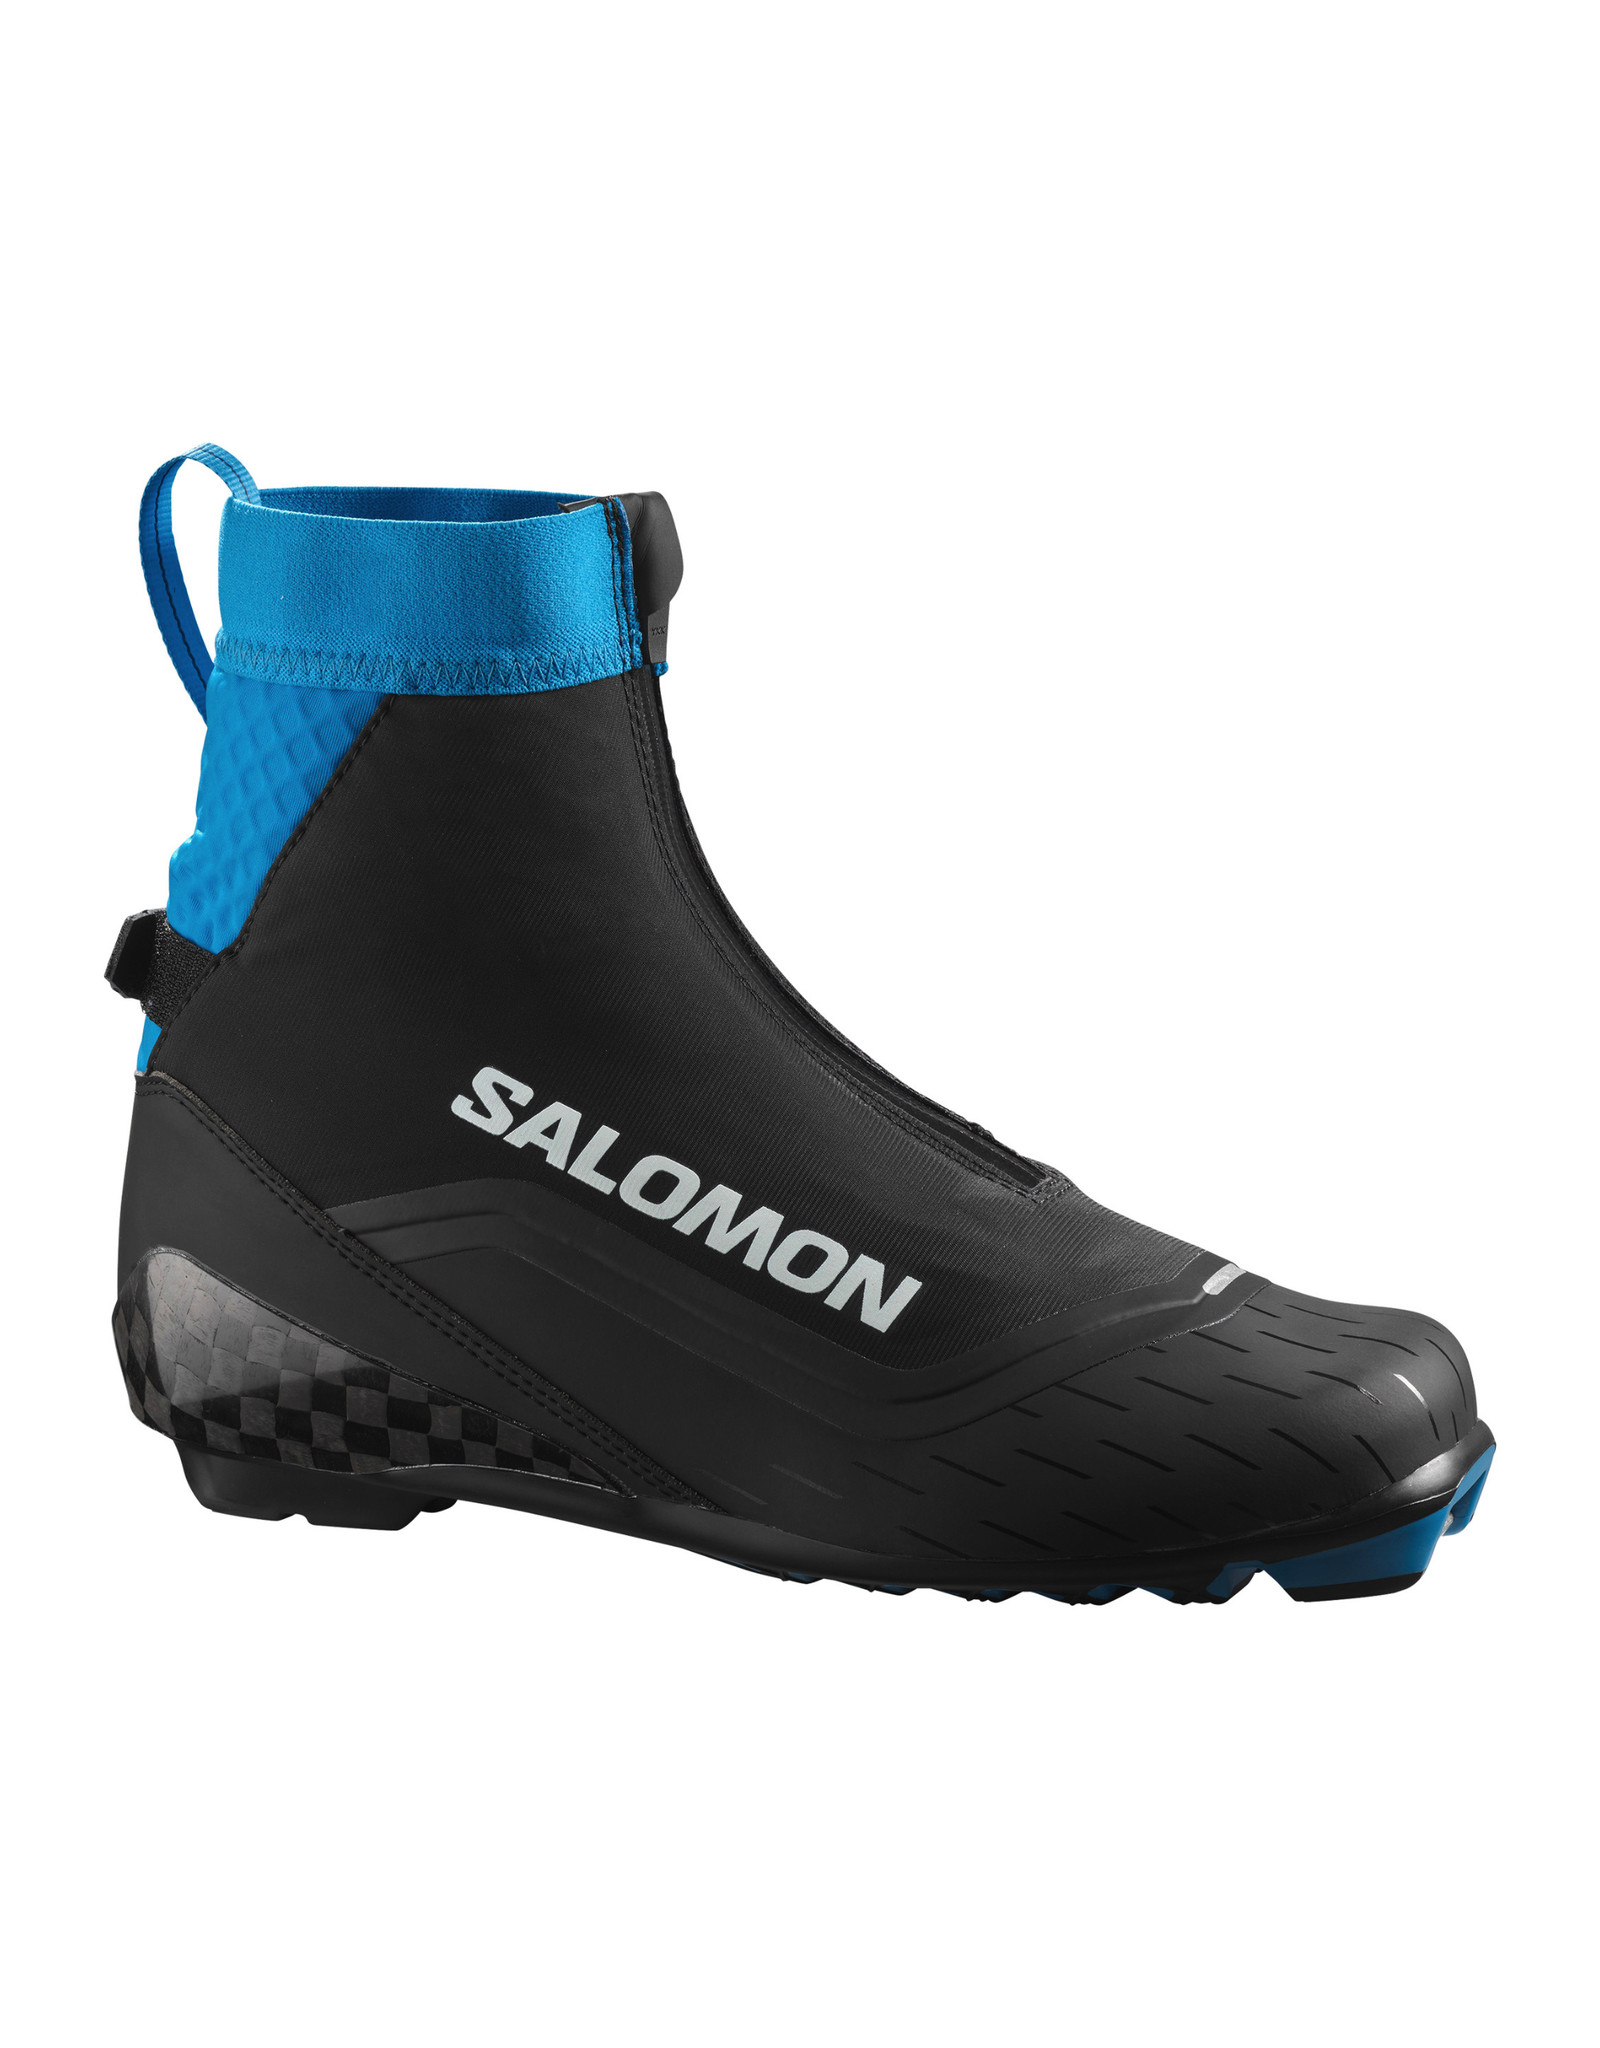 Salomon Salomon S/Max Carbon Classic